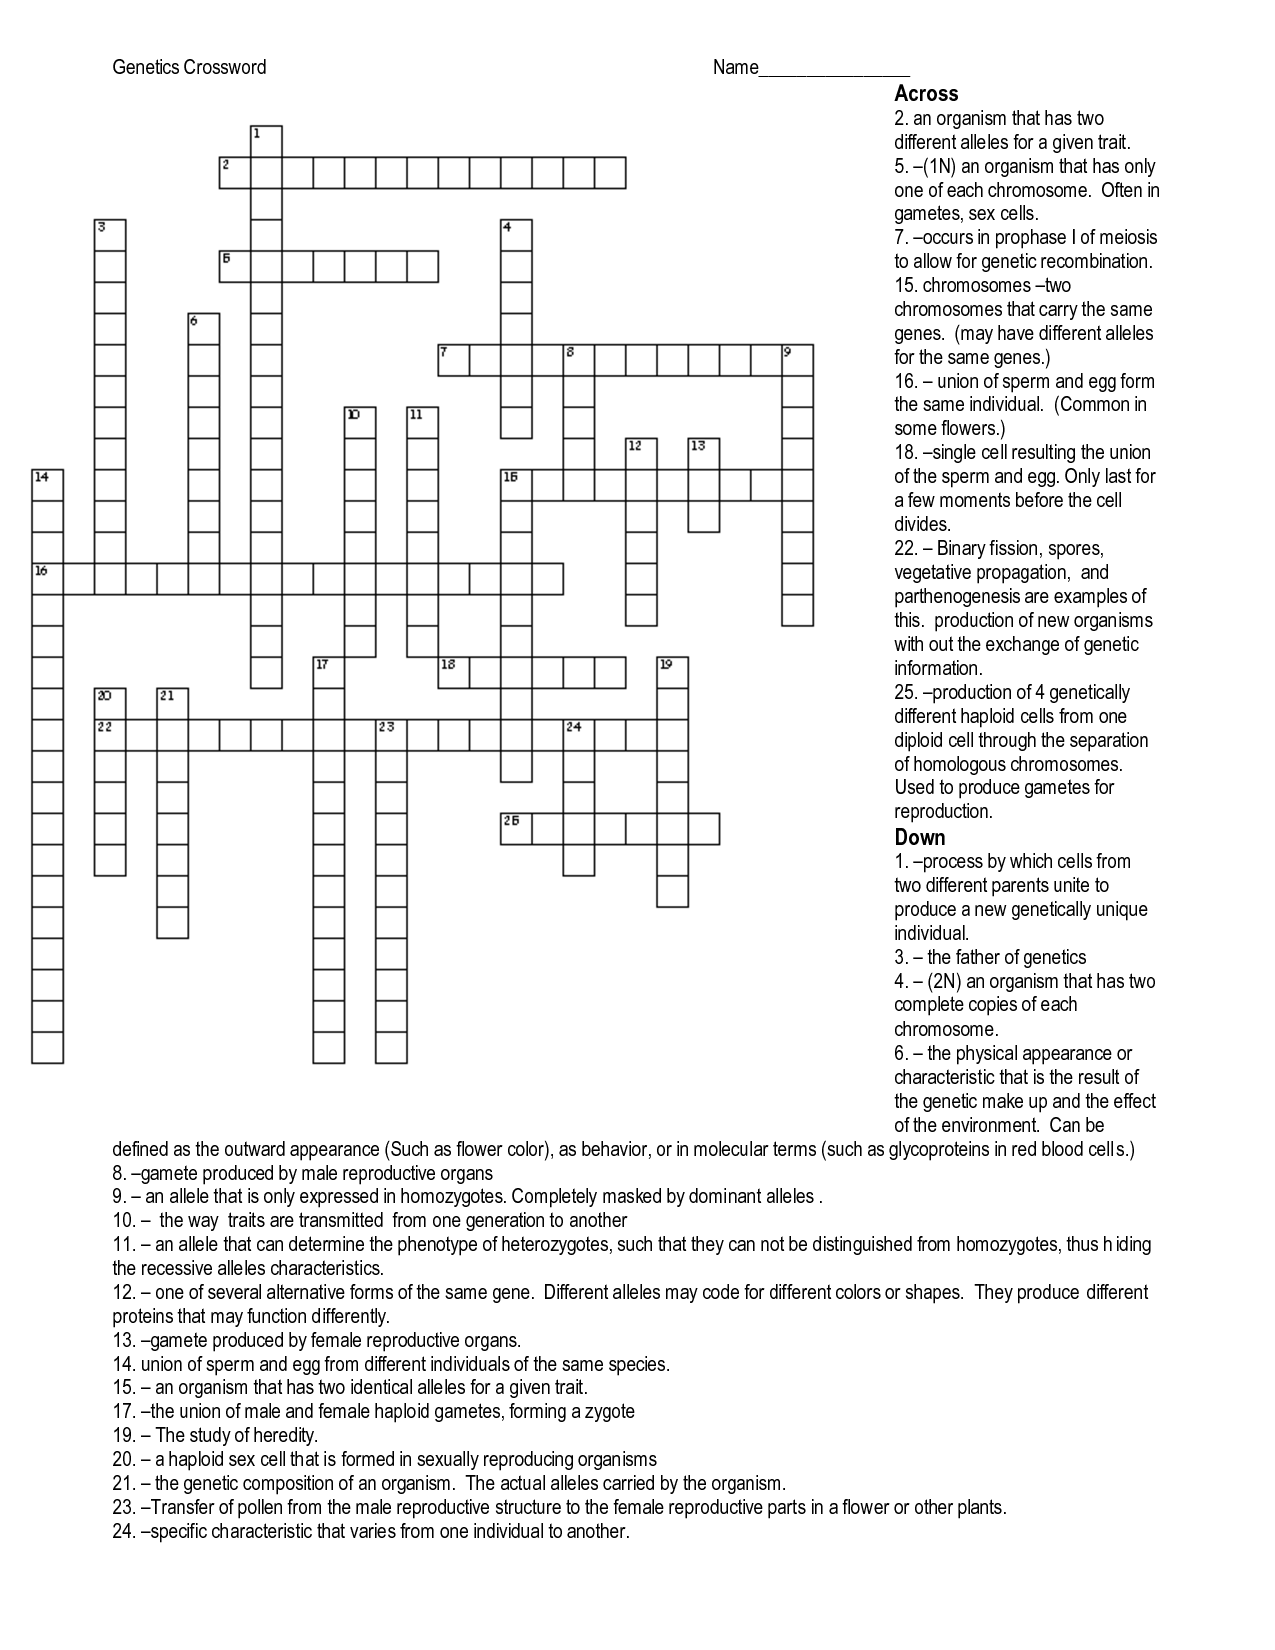 Genetics Crossword Puzzle Answers